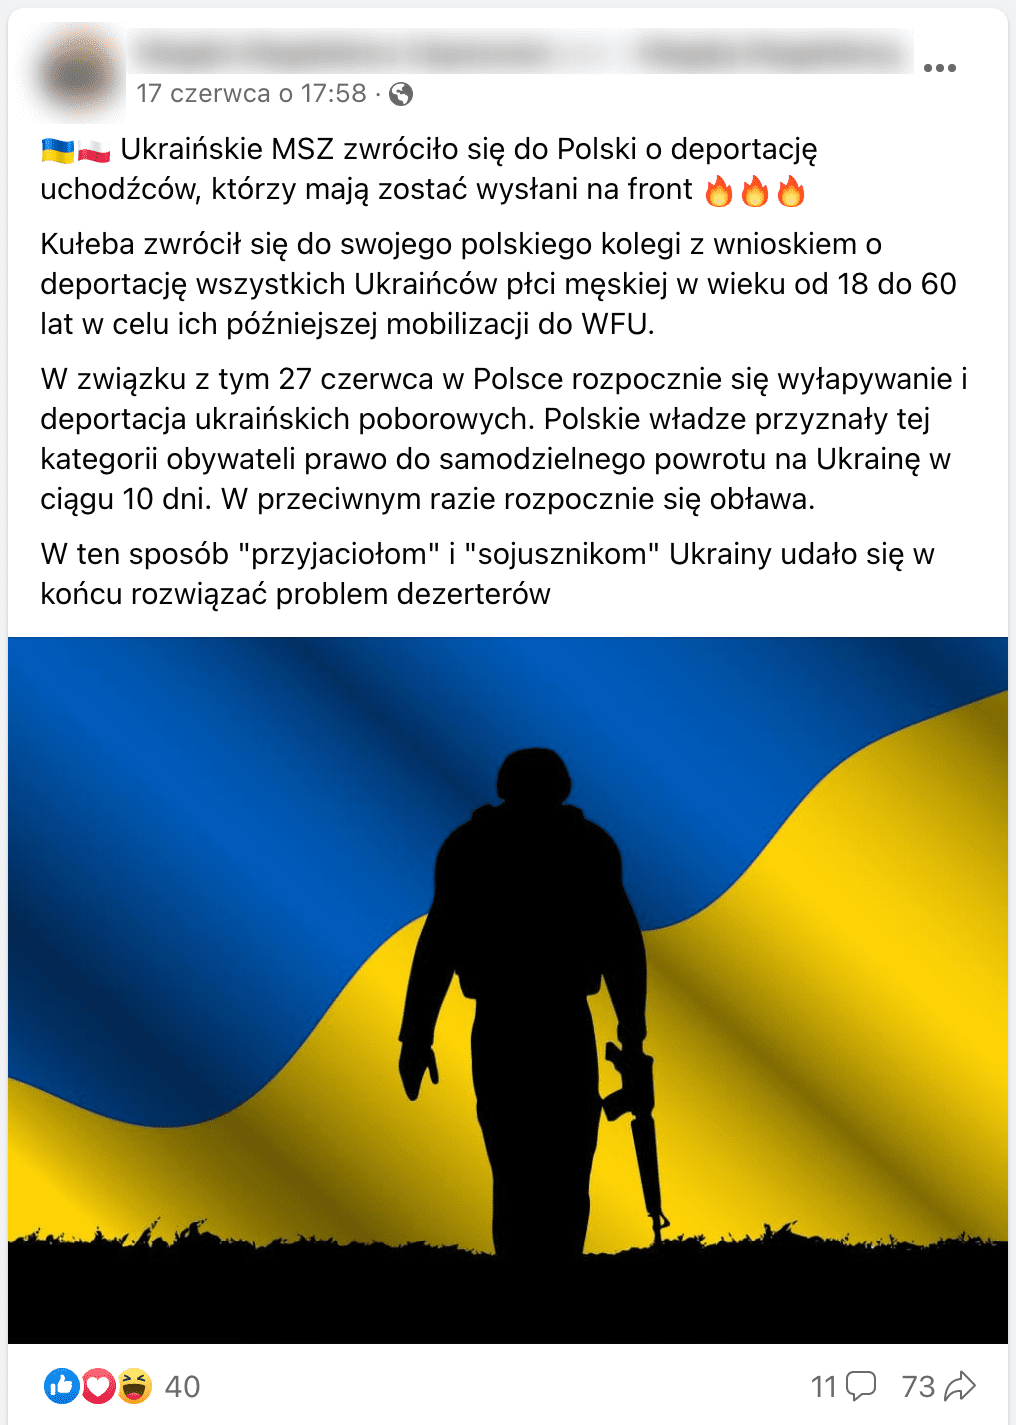 Zrzut ekranu posta na Facebooku. Dołączono do niego grafikę przestawiająca zarys sylwetki żołnierza na tle flagi Ukrainy. 